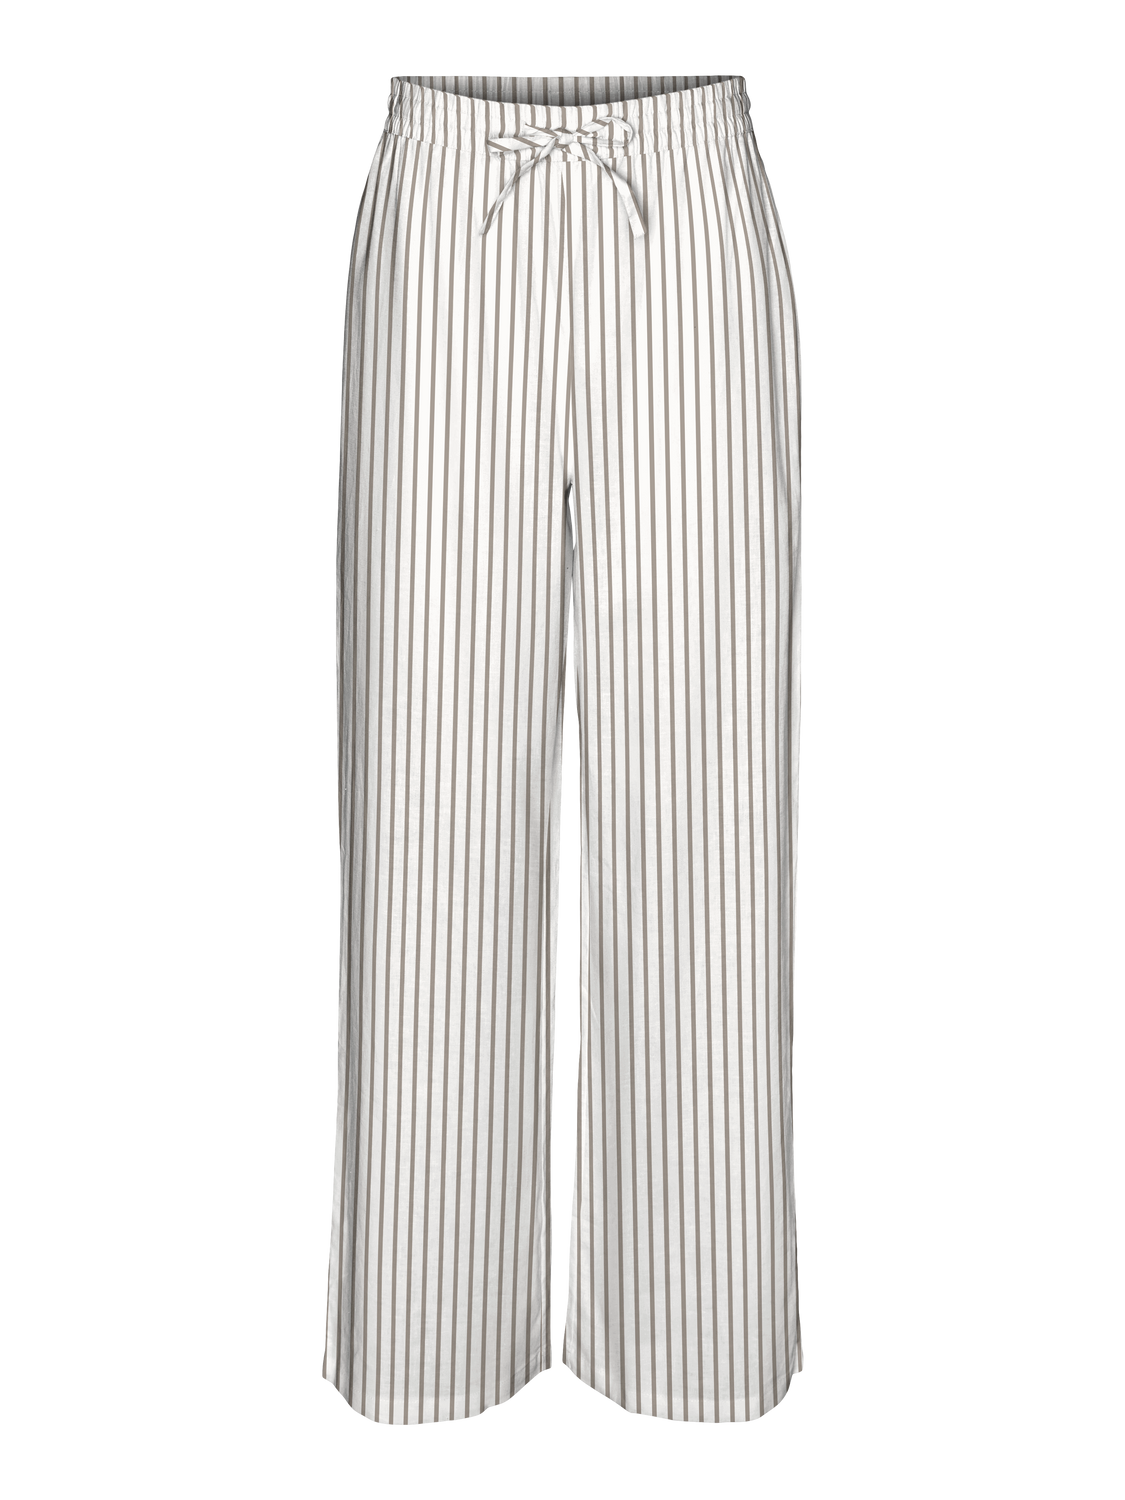 VMLINN Pants - Snow White with stripes